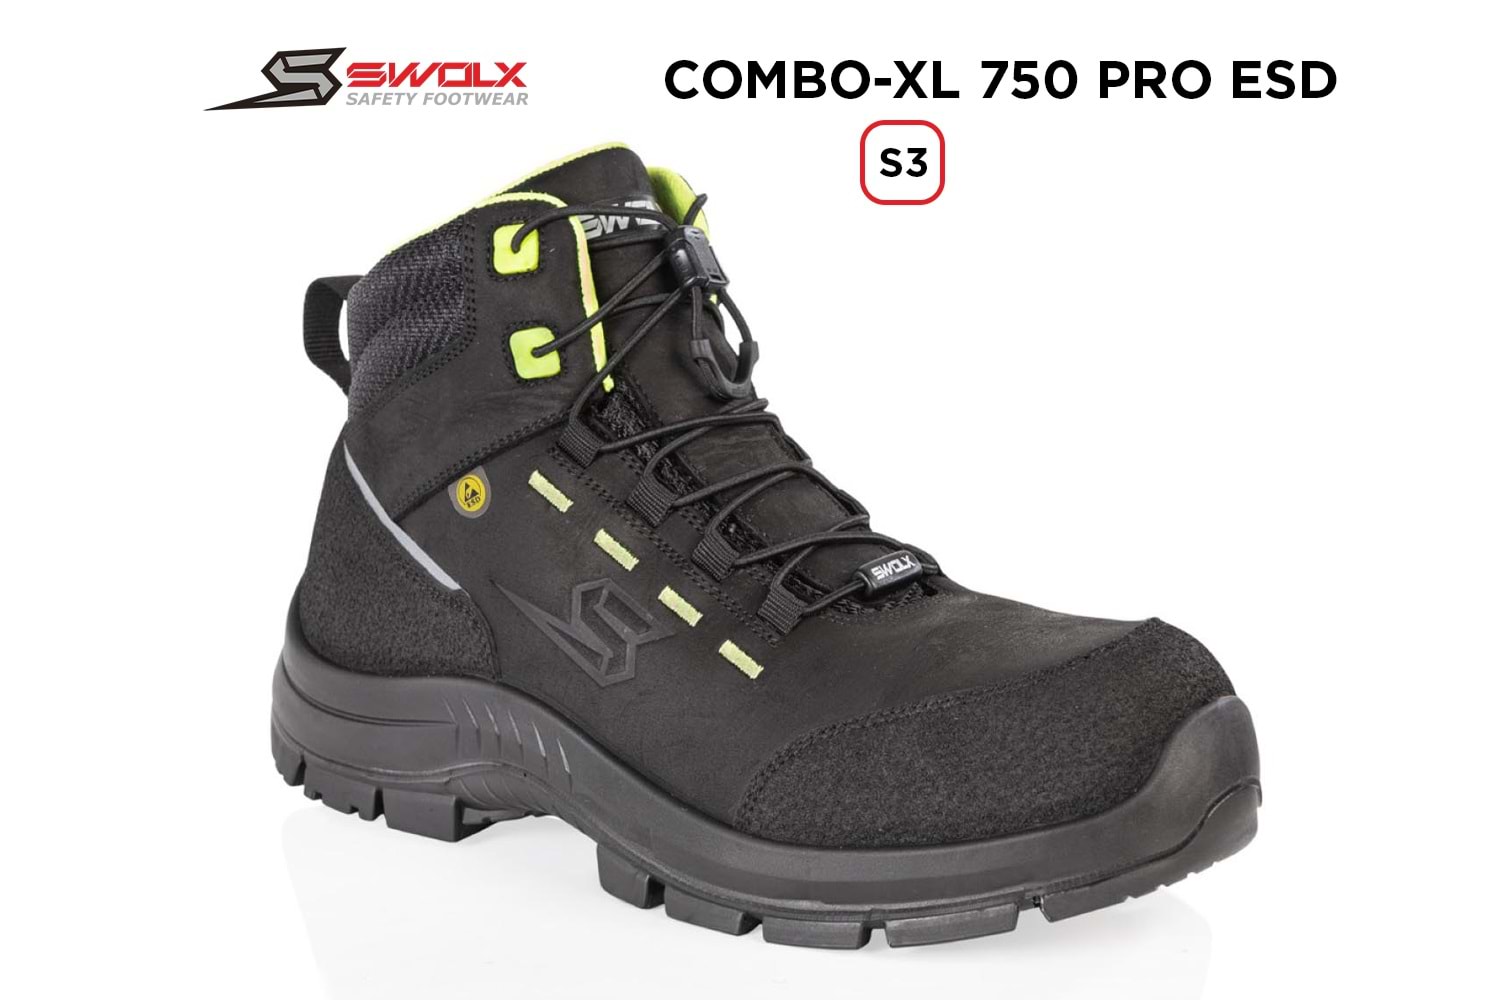 Swolx İş Ayakkabısı - Combo-Xl Pro Esd 750 S3 - 41